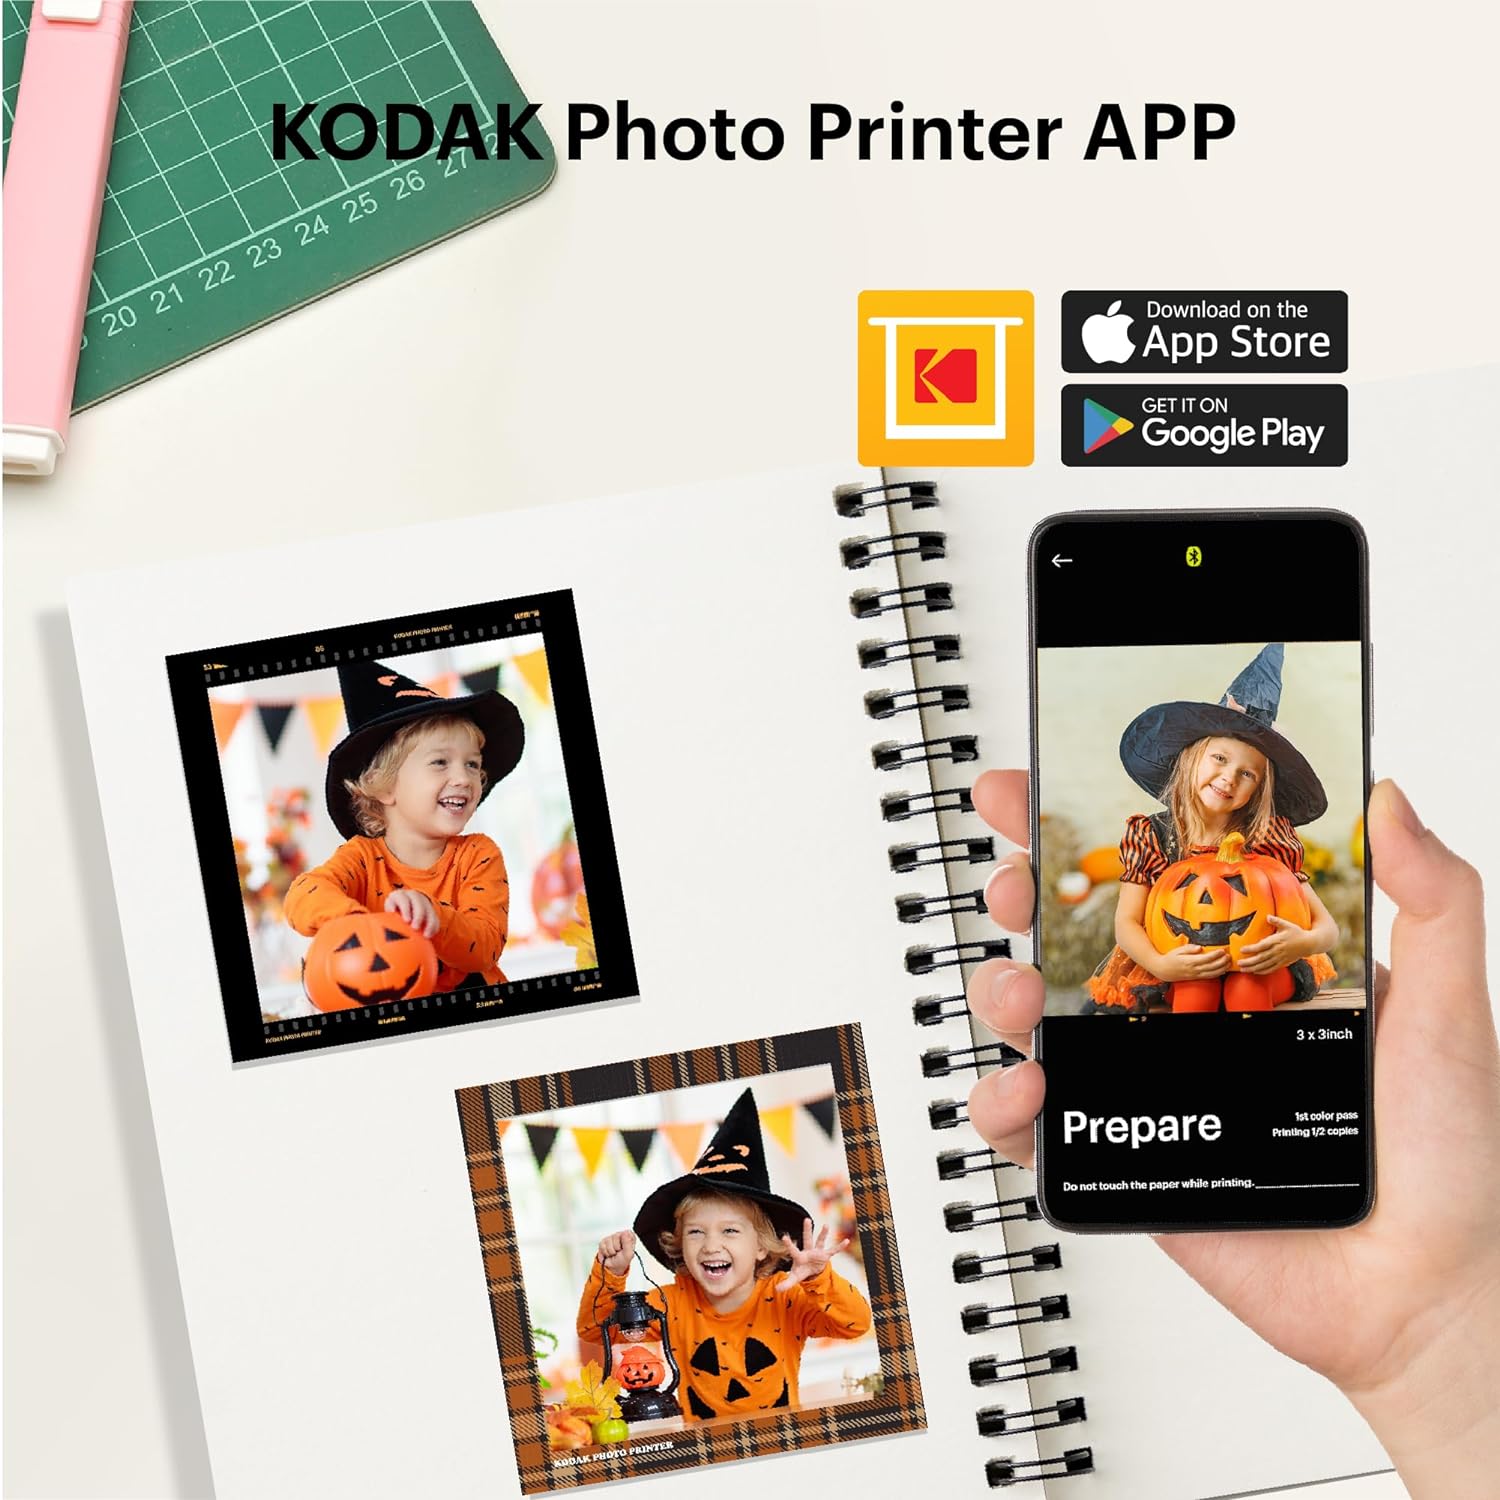  Impresora portátil Kodak Mini 3 Square Retro - Impresora  instantánea de fotos en redes sociales - Aplicación de primera compatible  con iOS y Android - Conexión inalámbrica - Foto real de